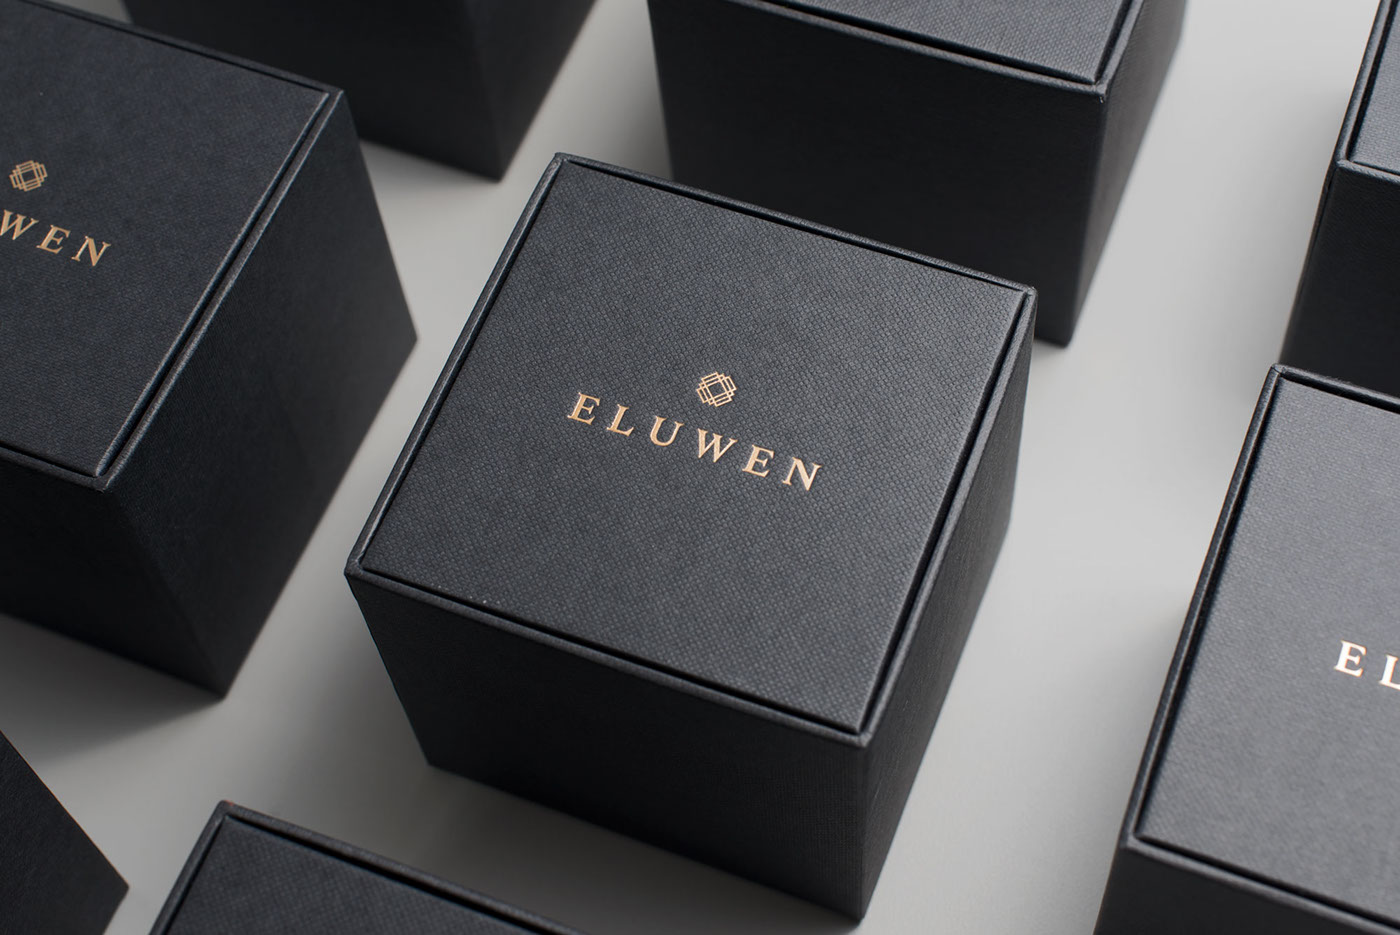 Eluwen jewelry luxury Packaging jakarta branding 